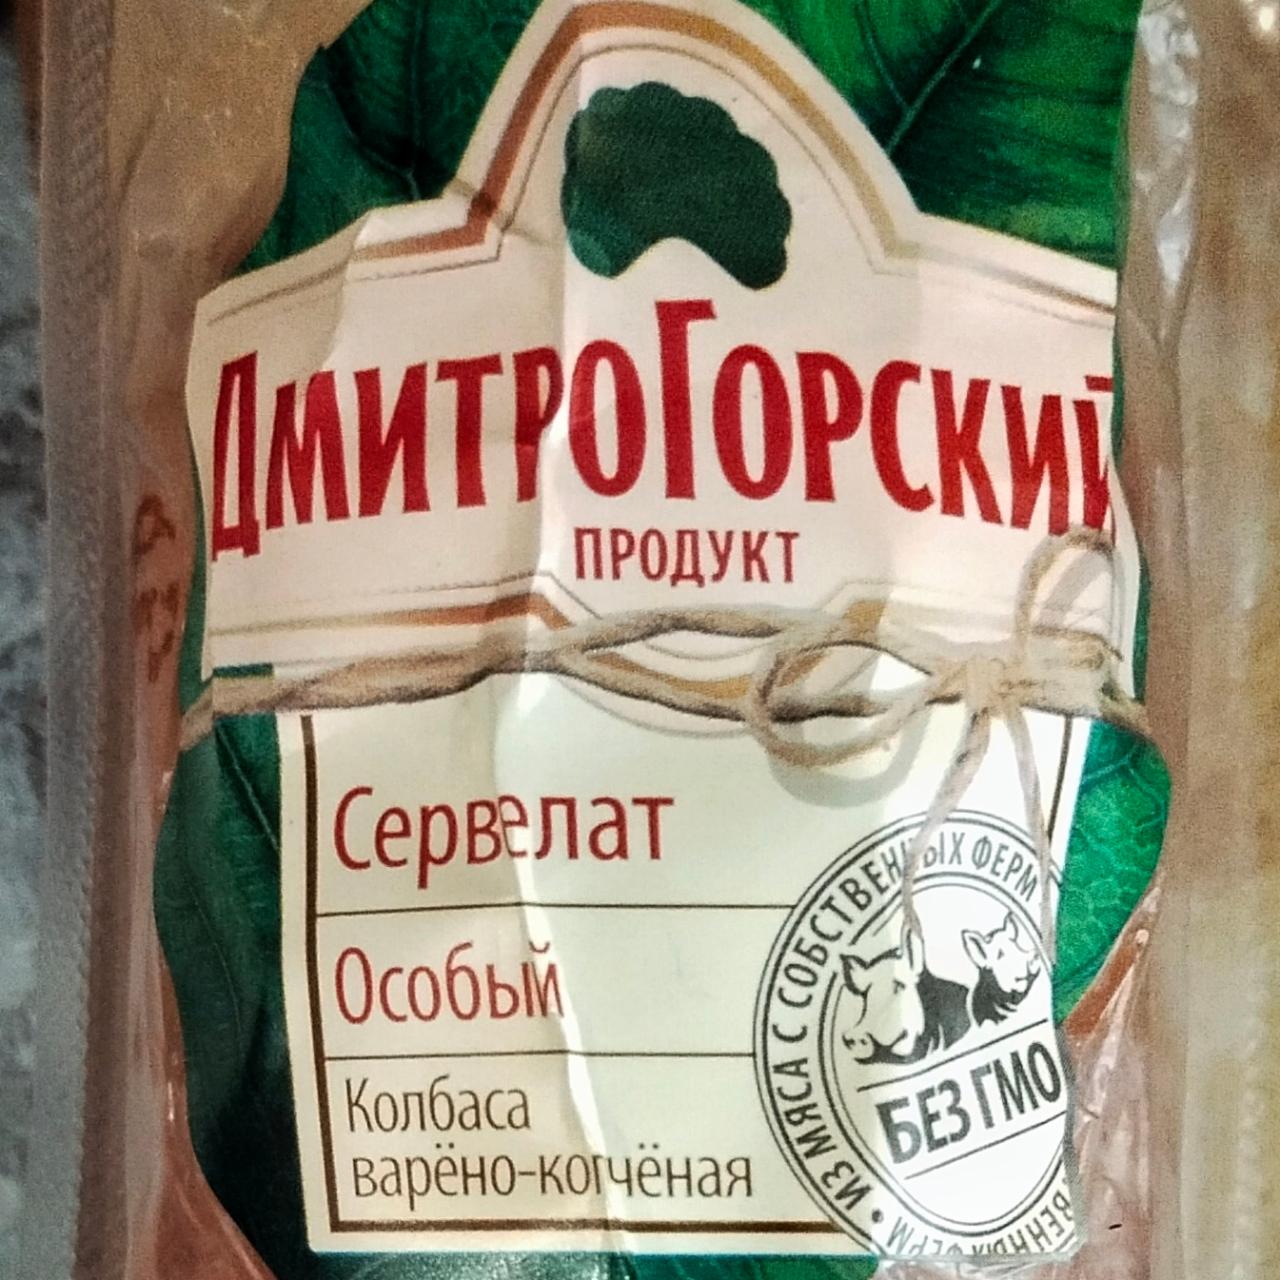 Фото - сервелат особый колбаса варёно-копчёная колбасное изделие мясной продукт категории в ДмитроГорский продукт